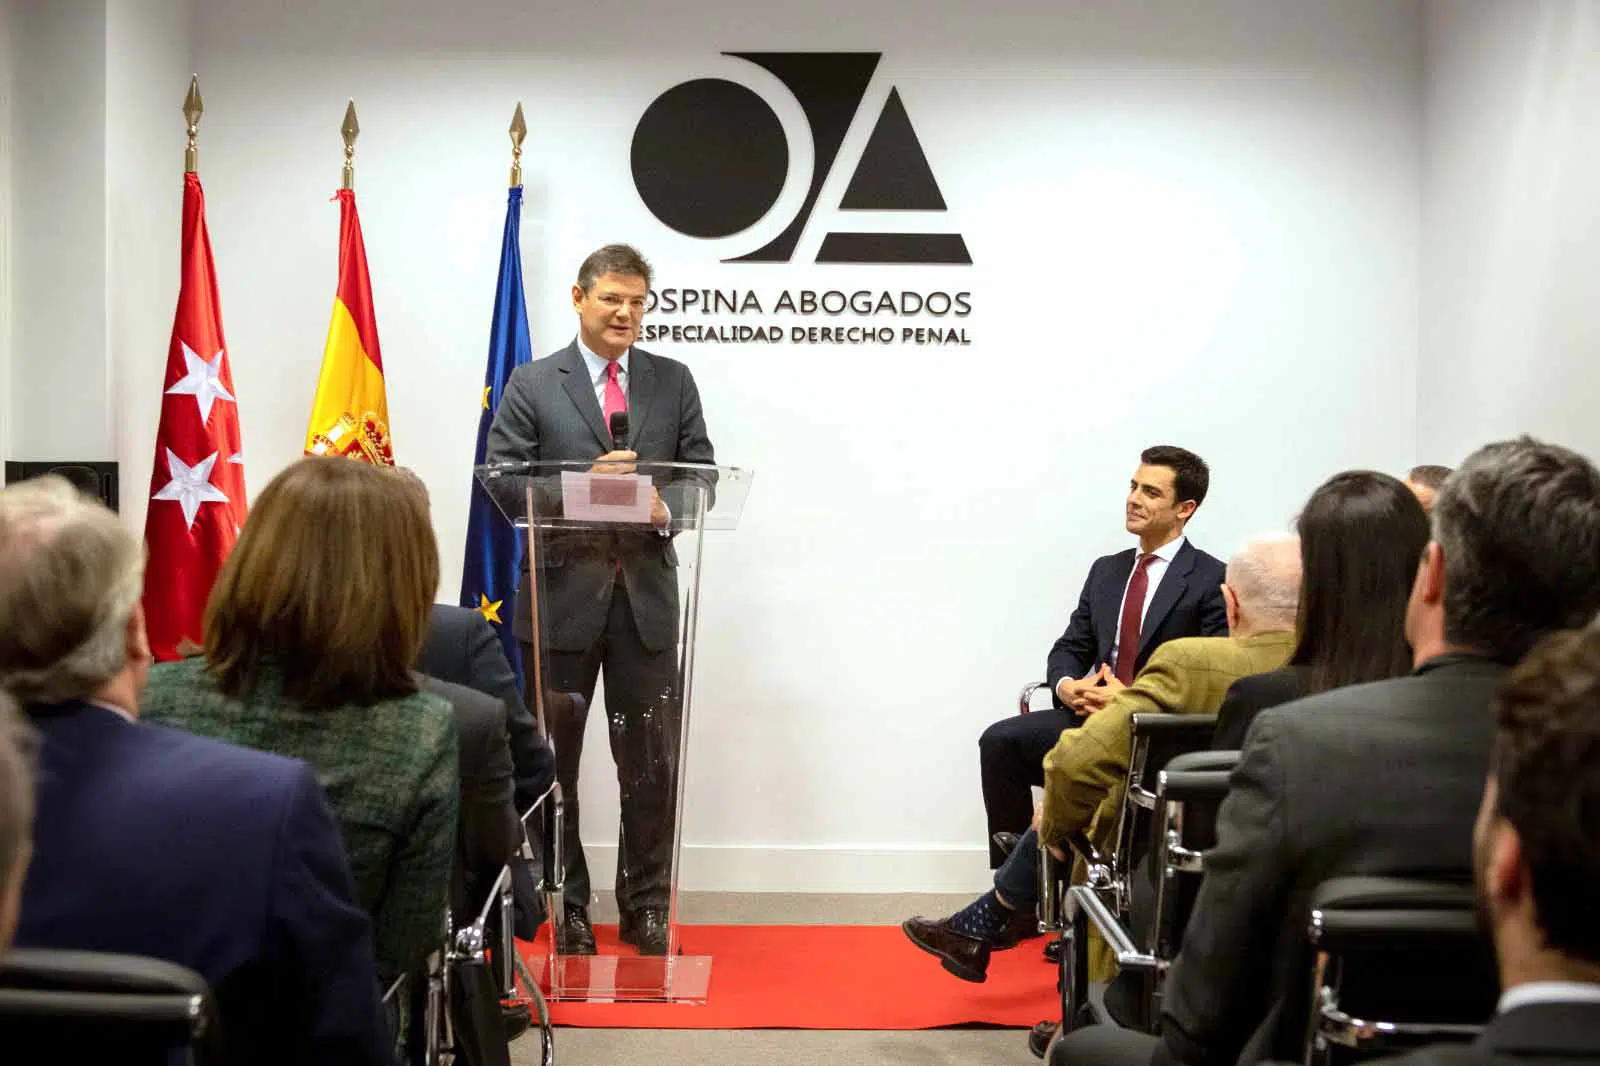 Ospina Abogados, en crecimiento, inaugura nueva sede en Madrid